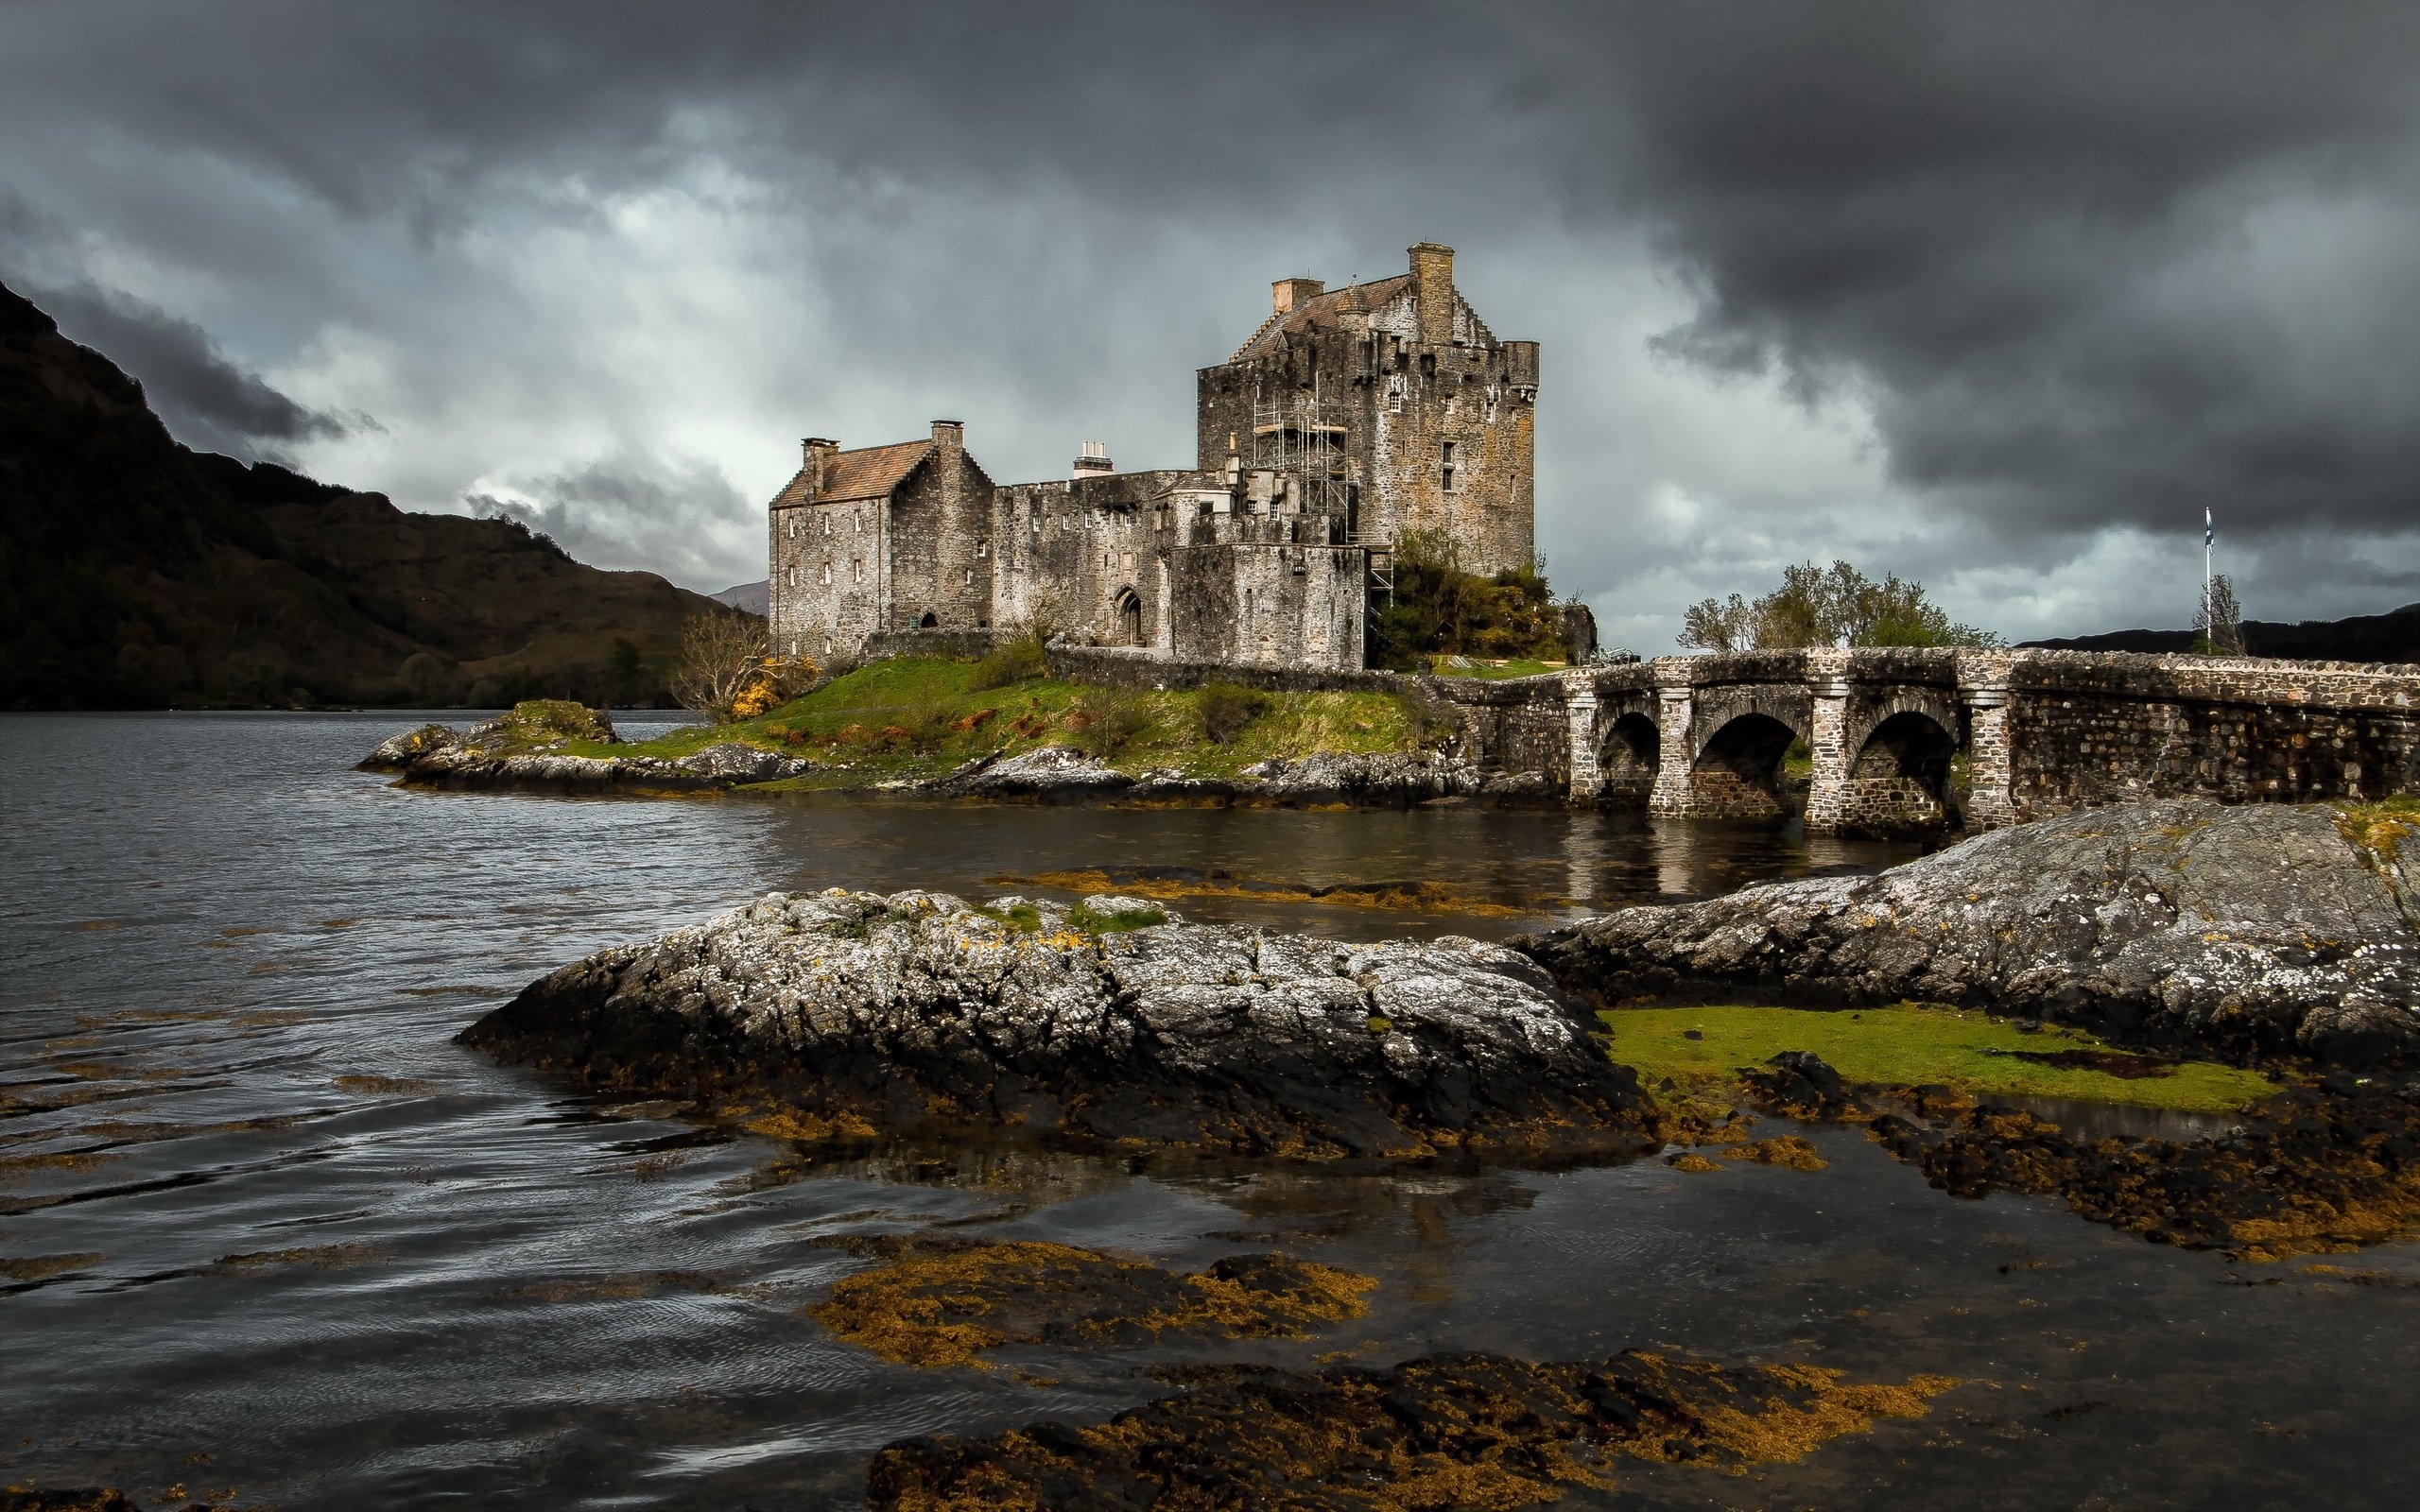 Шотландия. Эйлен Донан Шотландия. Замок Эмброуз Шотландия. Разрушенный замок Эйлен Донан. Каменный мост Эйлен Донан.